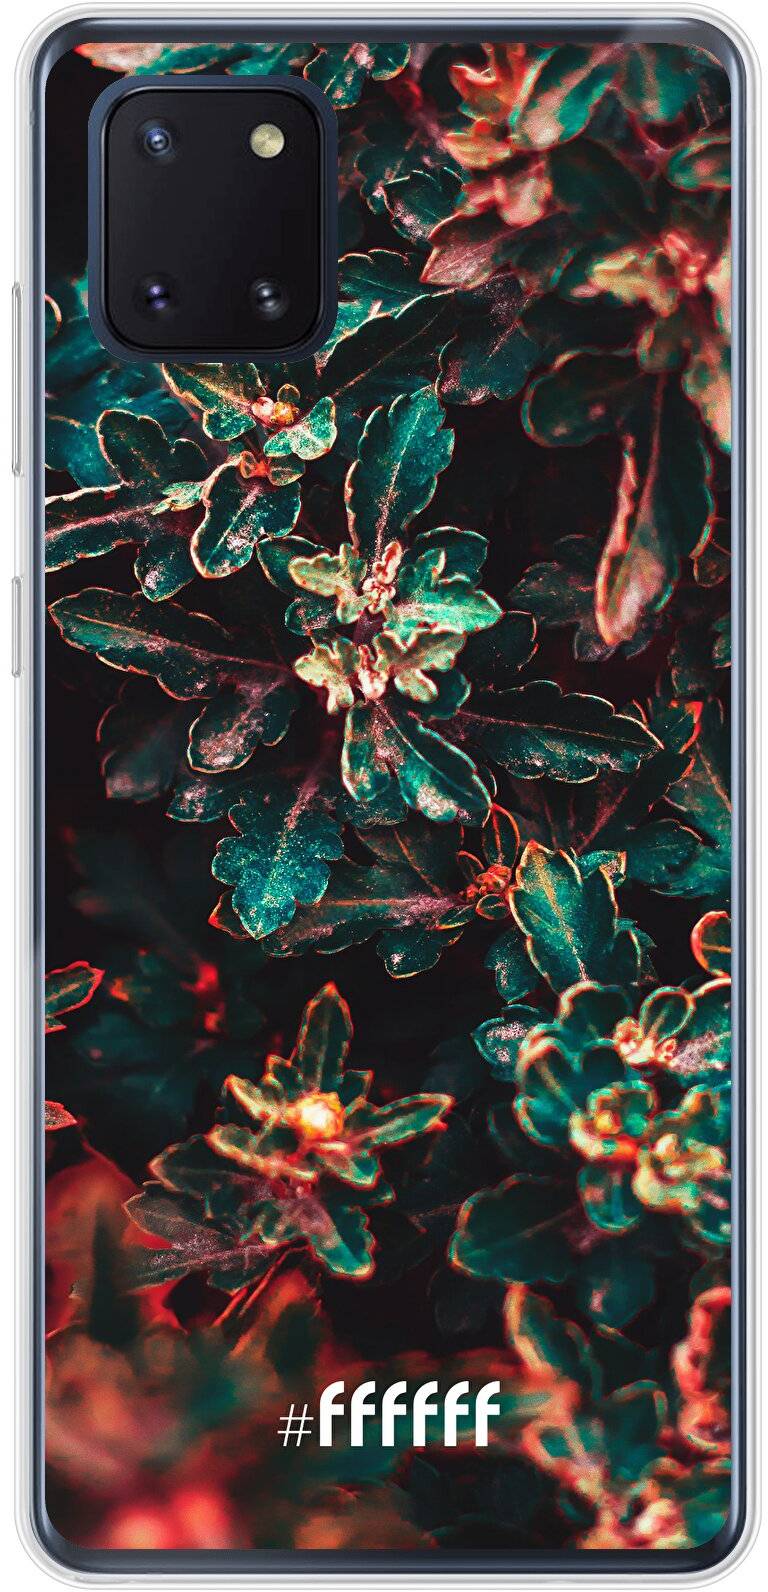 Ornament Galaxy Note 10 Lite